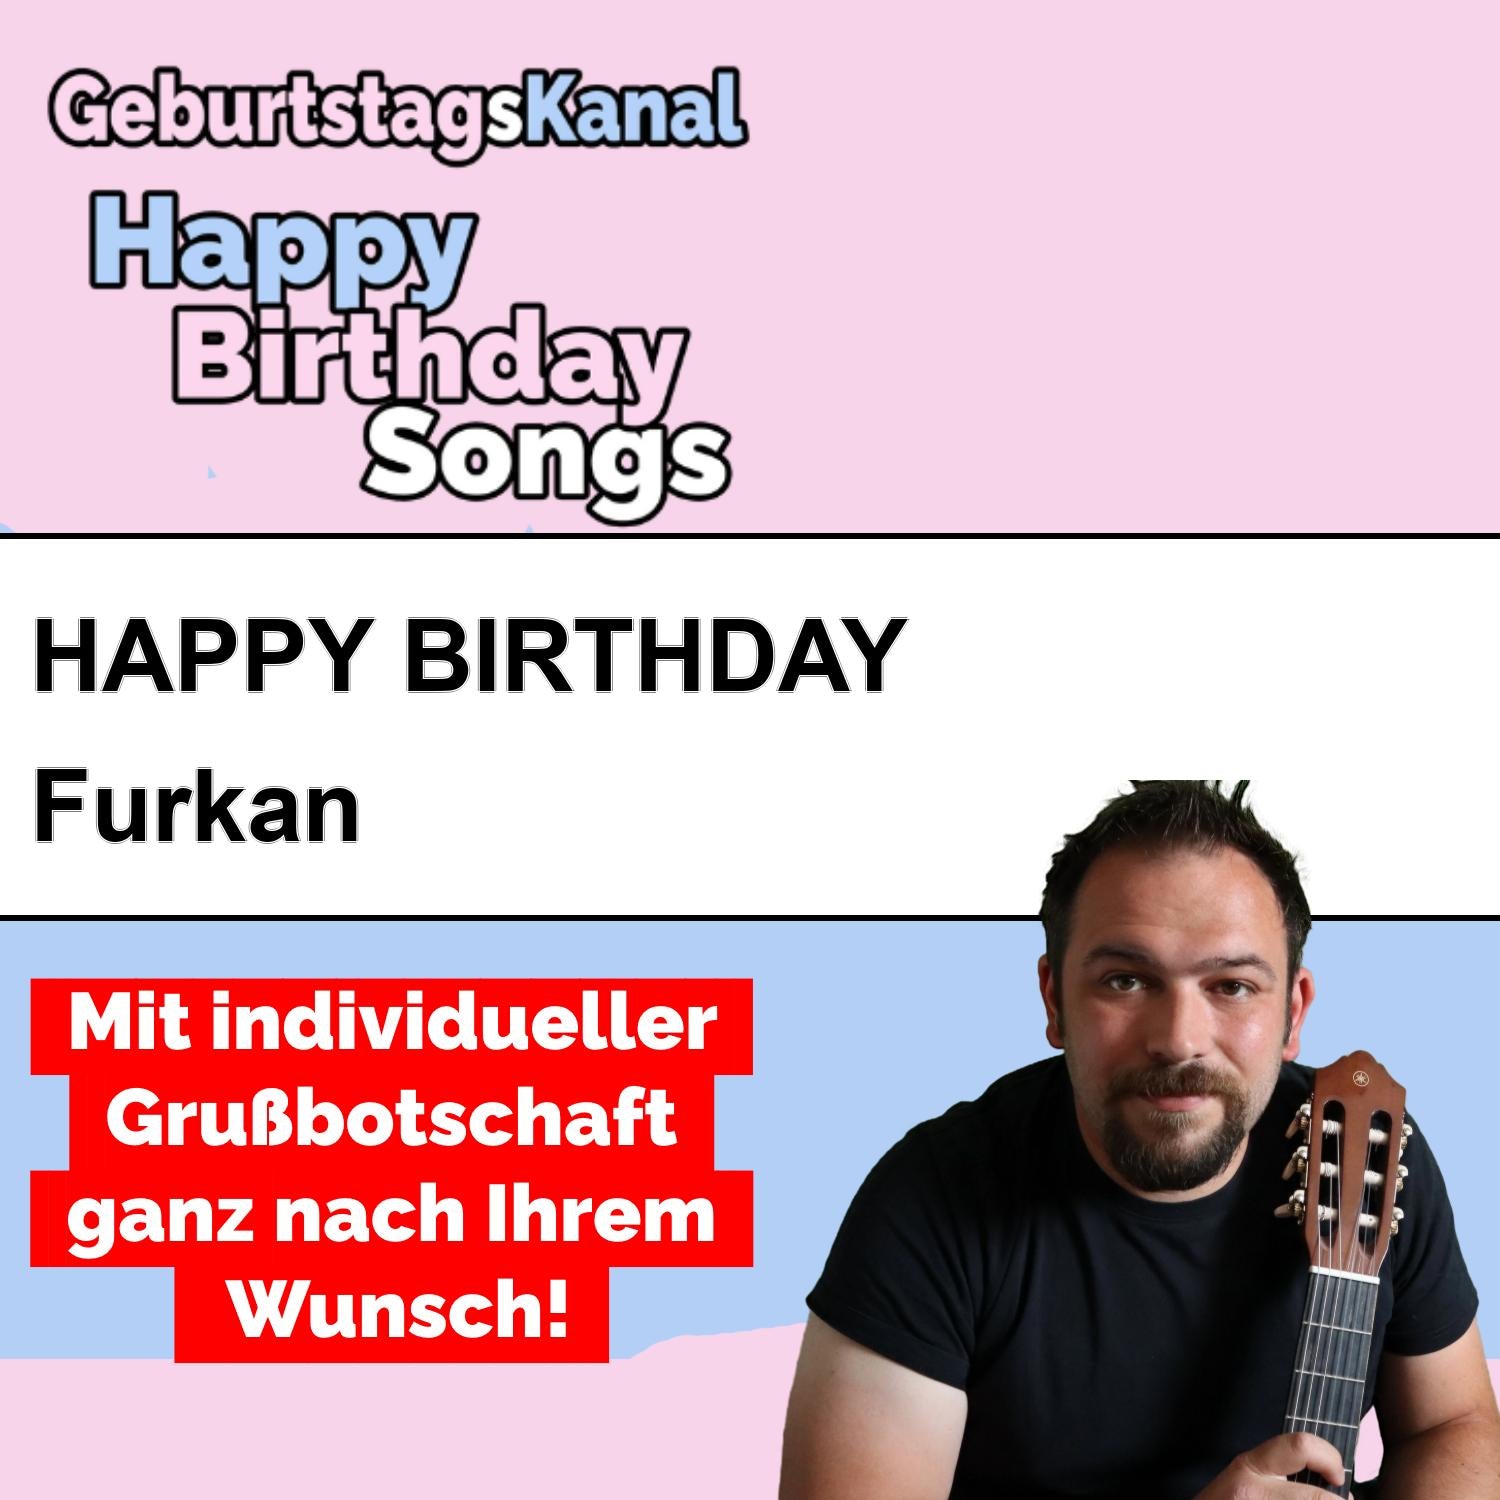 Produktbild Happy Birthday to you Furkan mit Wunschgrußbotschaft